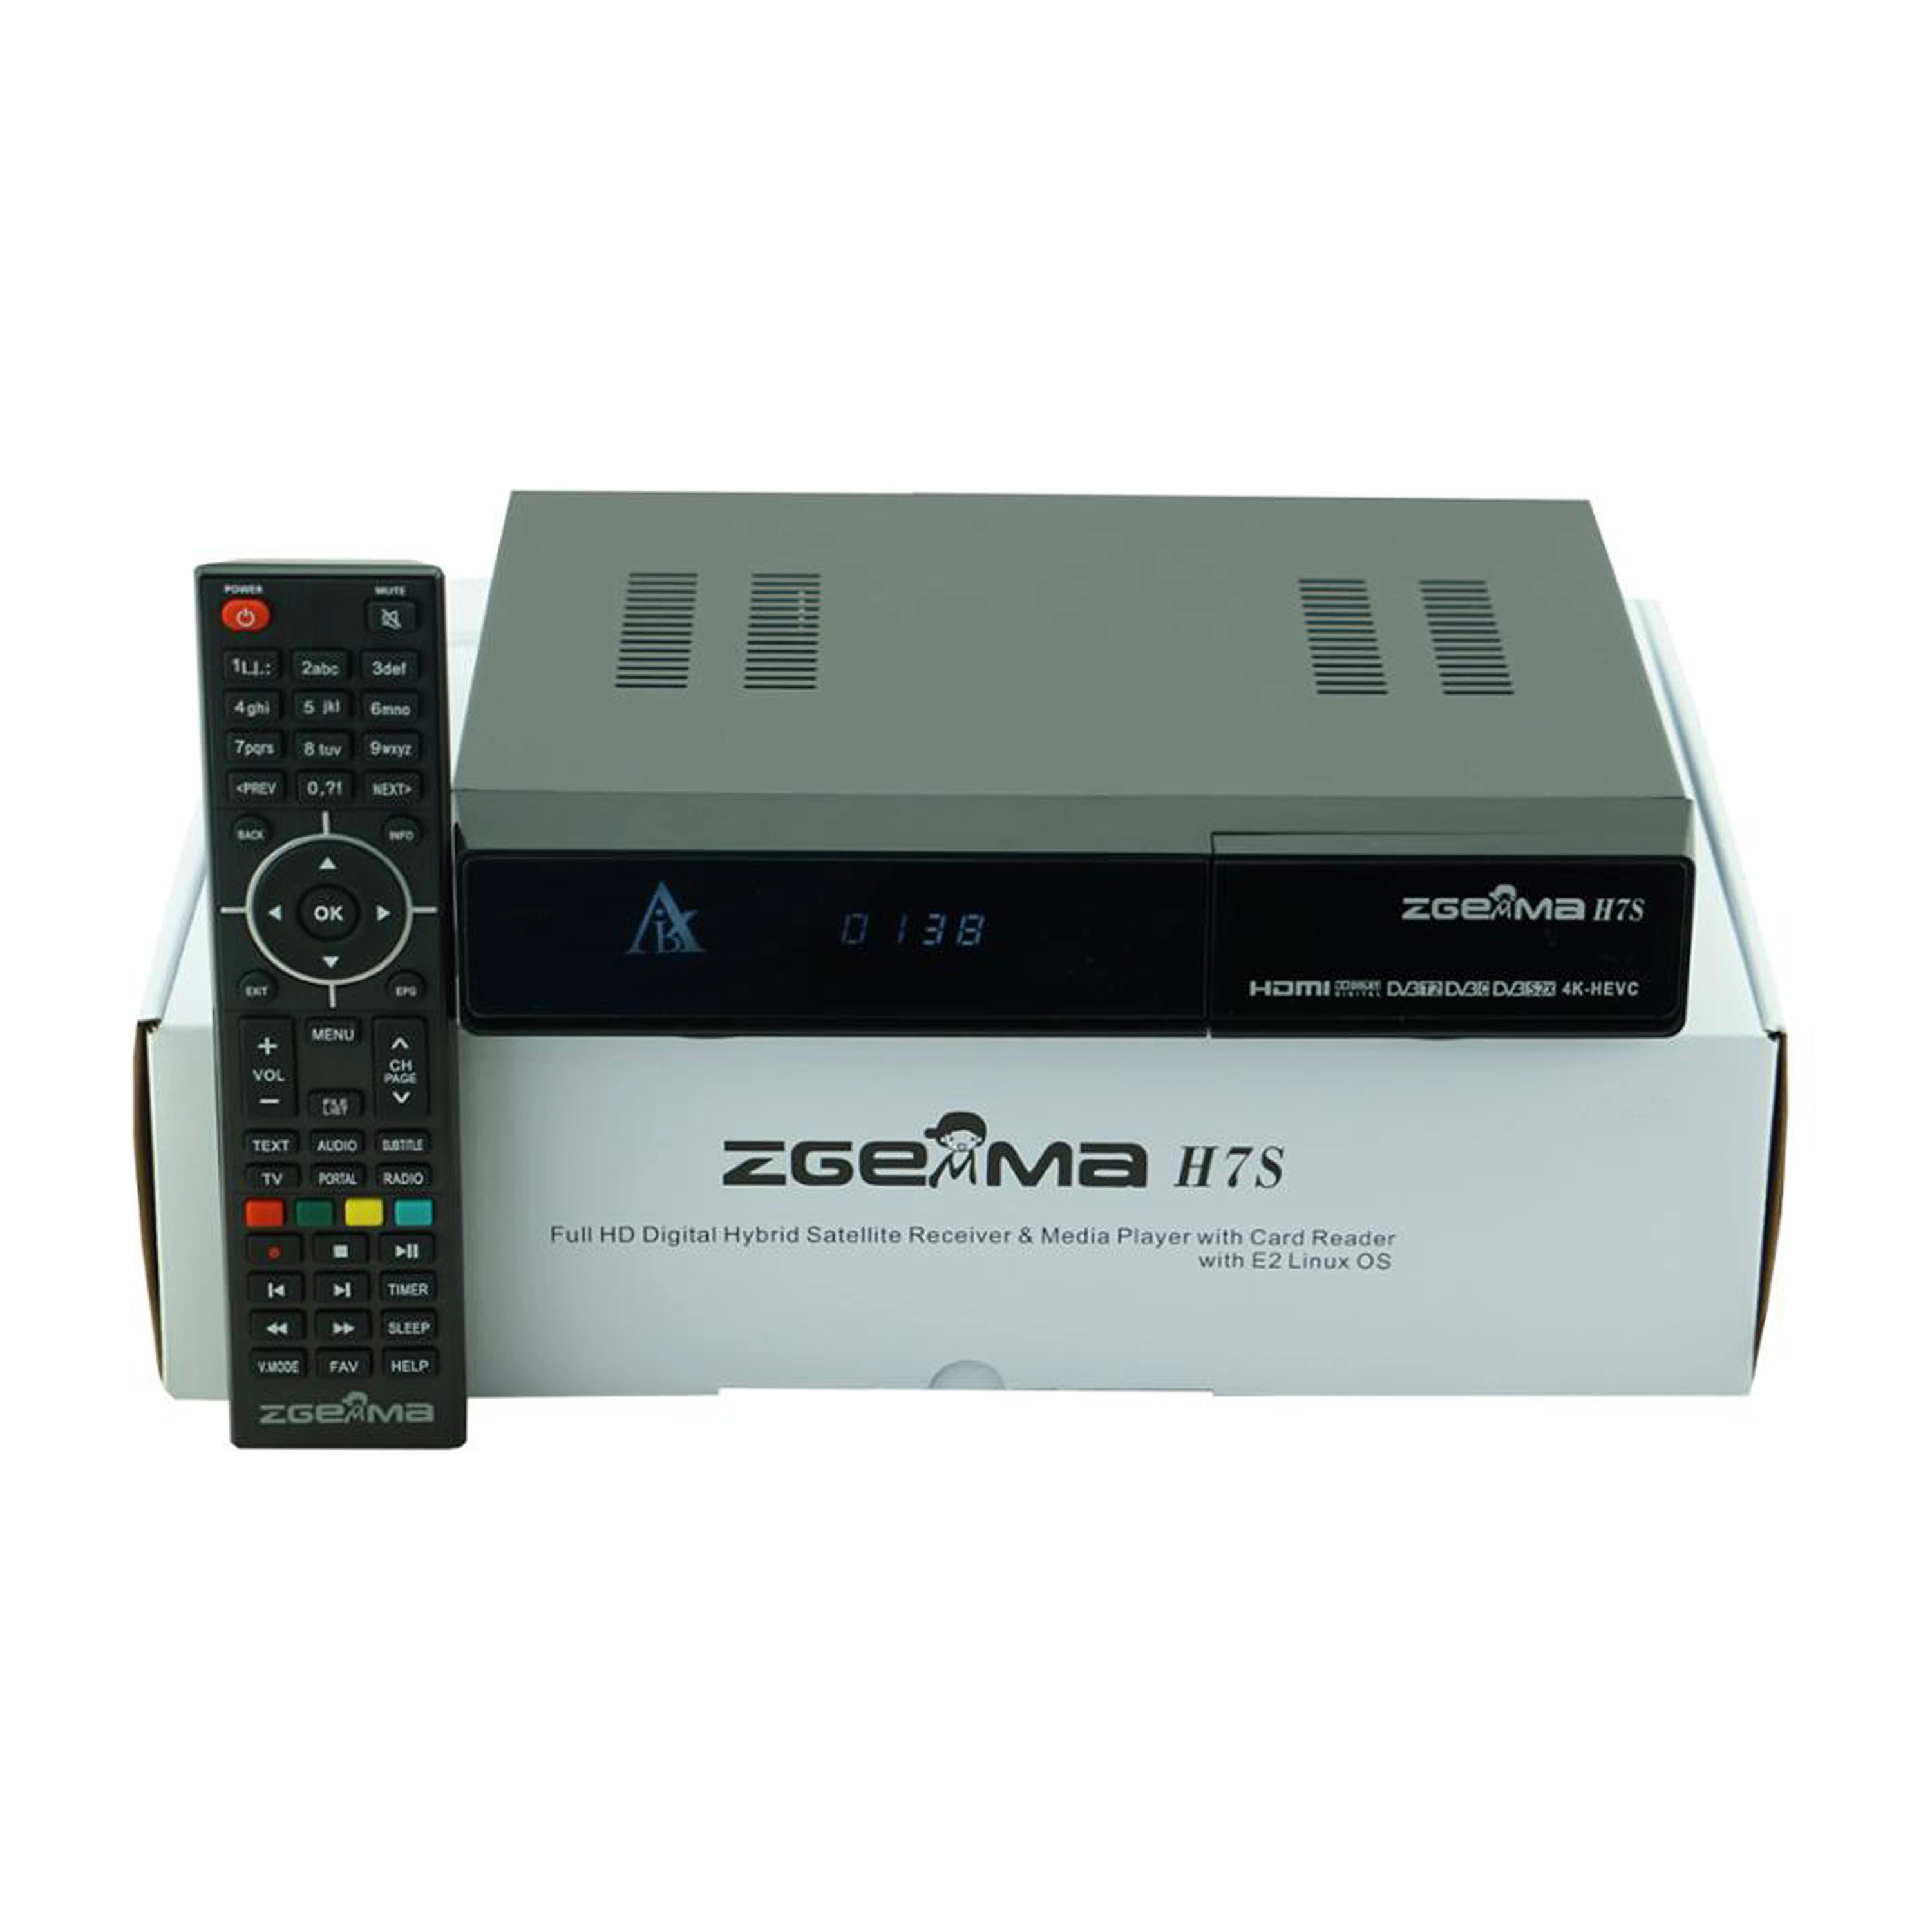 Melhore o seu entretenimento de TV com Zgemma H7s - 16 GB de memória eMMC Flash, 1 GB DDR3 Receptor de TV por satélite